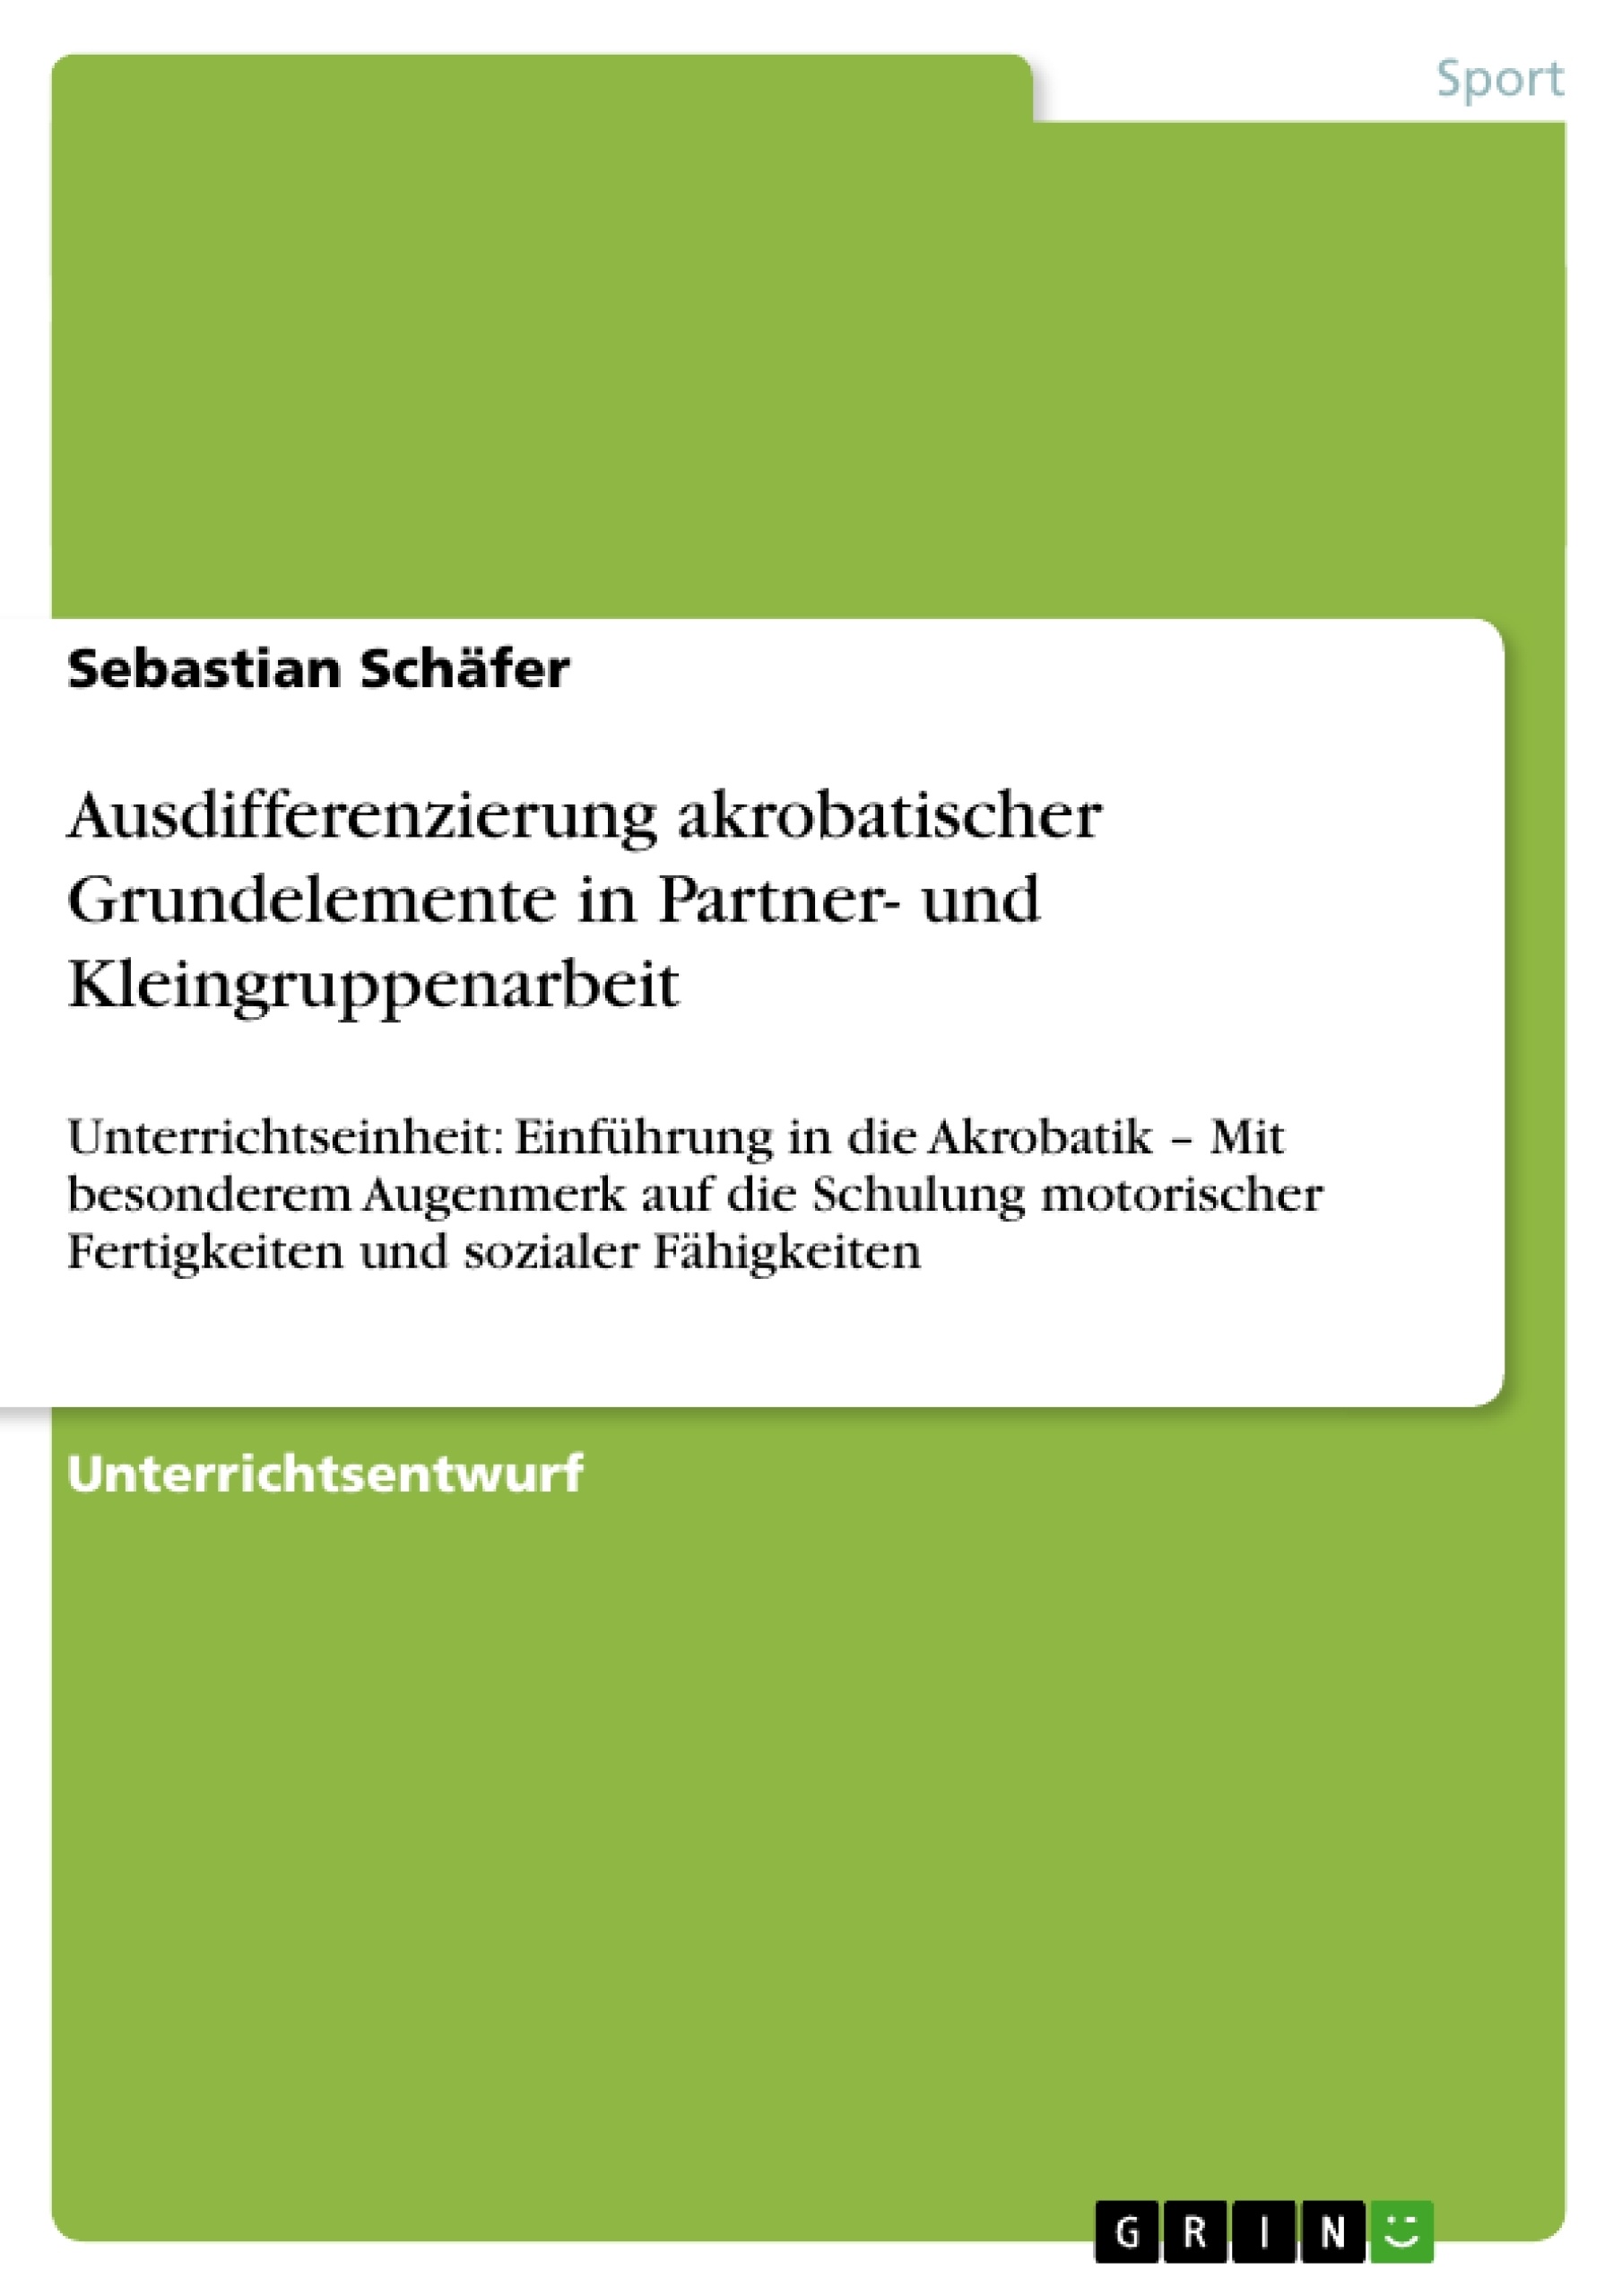 Título: Ausdifferenzierung akrobatischer Grundelemente in Partner- und Kleingruppenarbeit